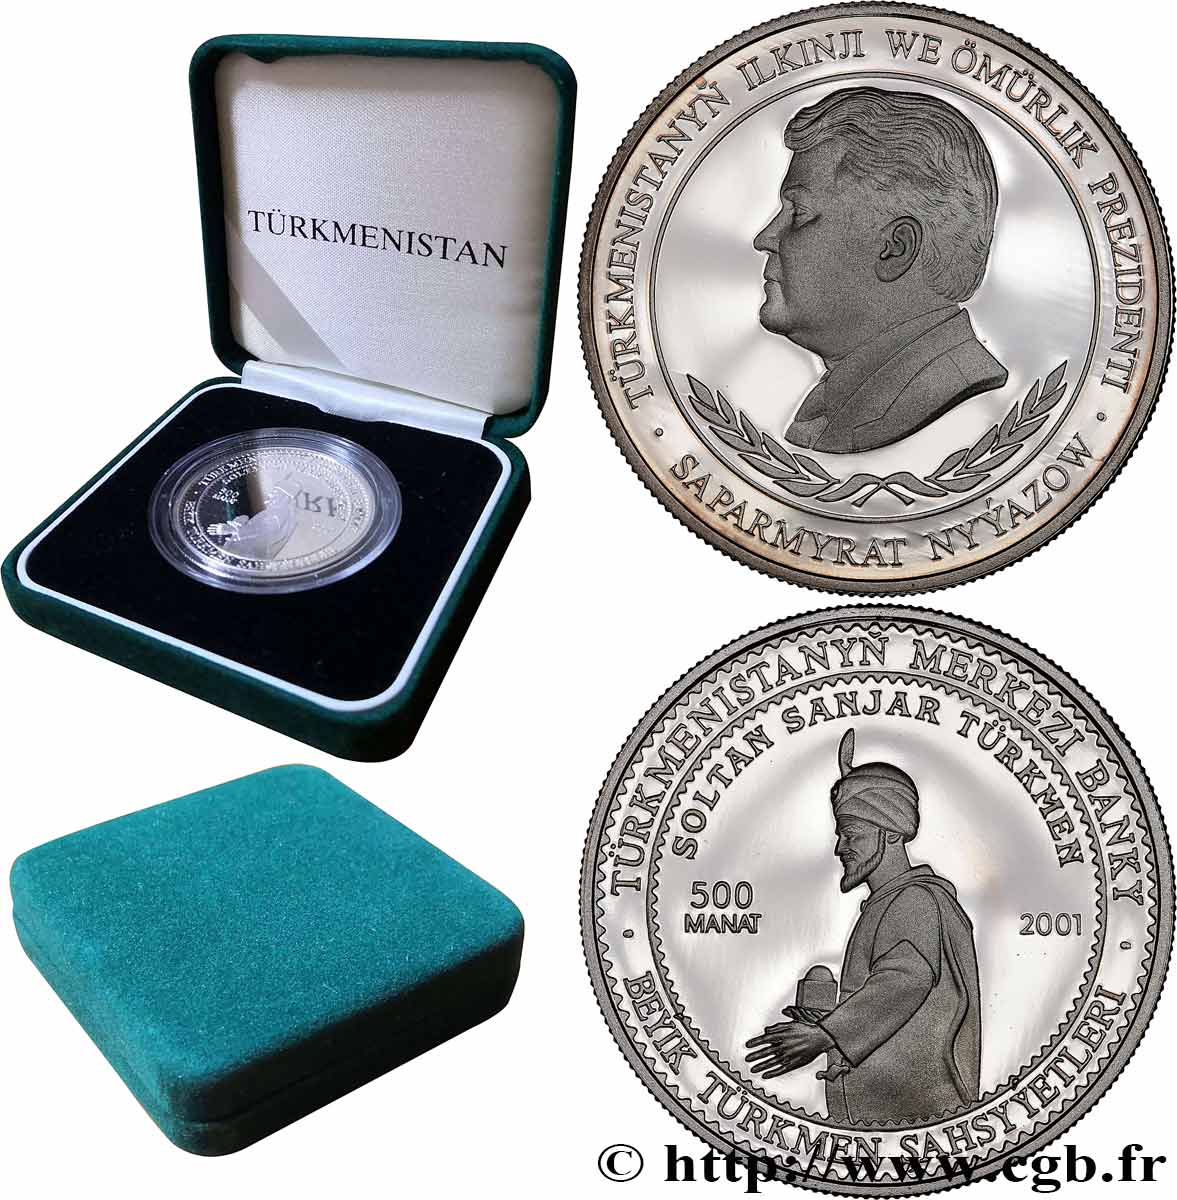 TURKMÉNISTAN 500 Manat Proof Soltan Sawjar 2001 British Royal Mint FDC 